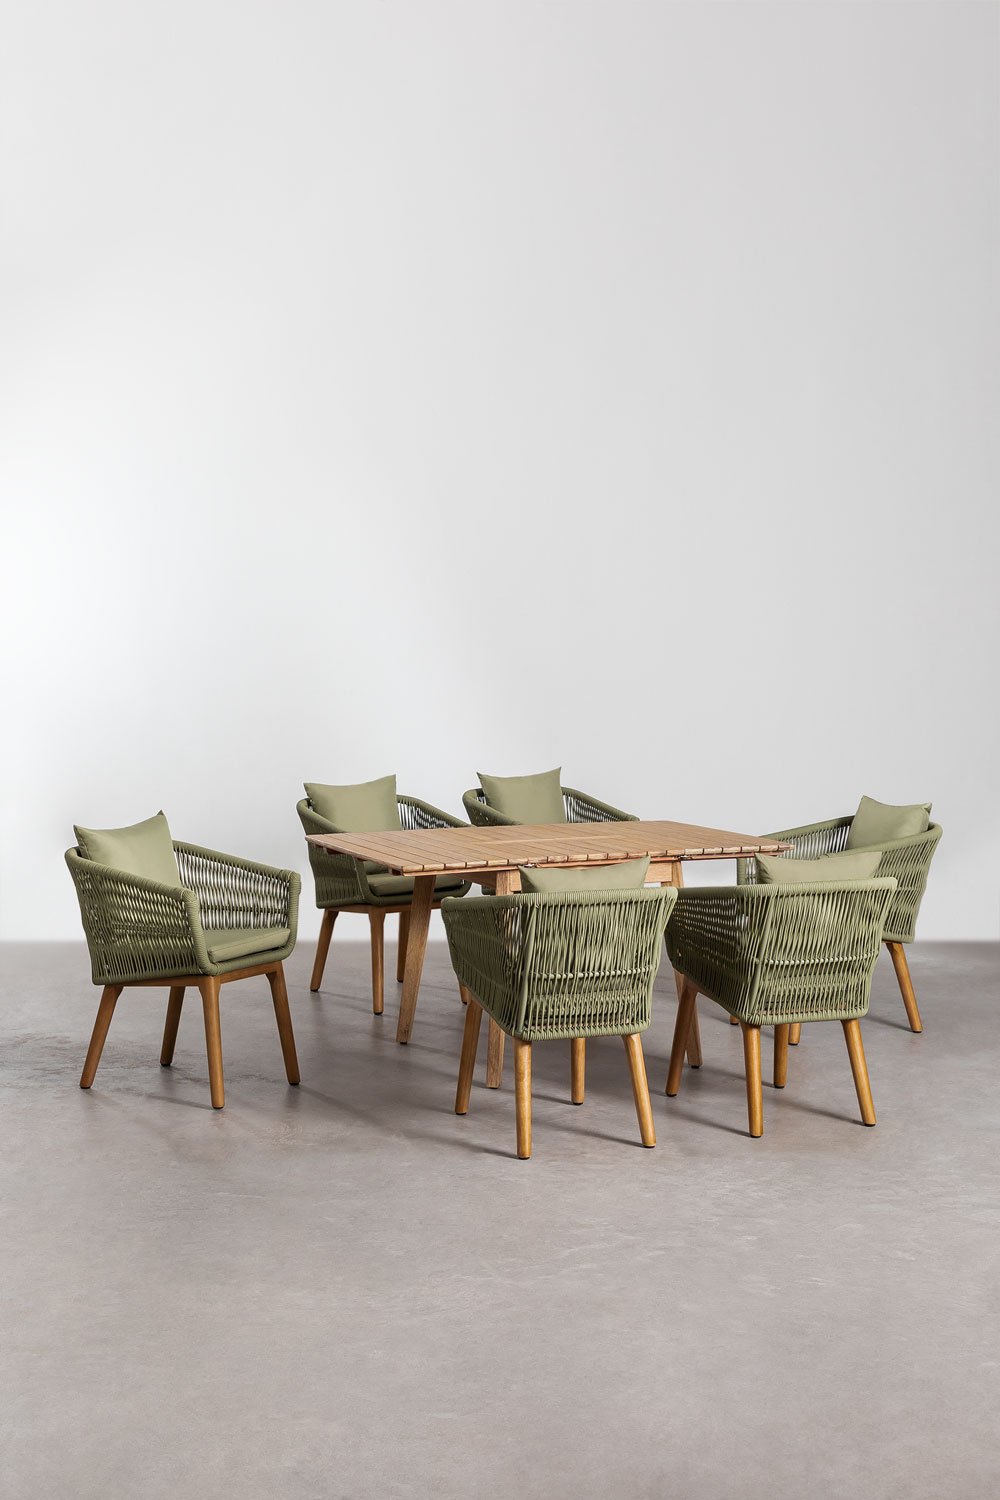 Houten uitschuifbare tafelset (90-150x90 cm) Naele en 6 Barker eetkamerstoelen, galerij beeld 1